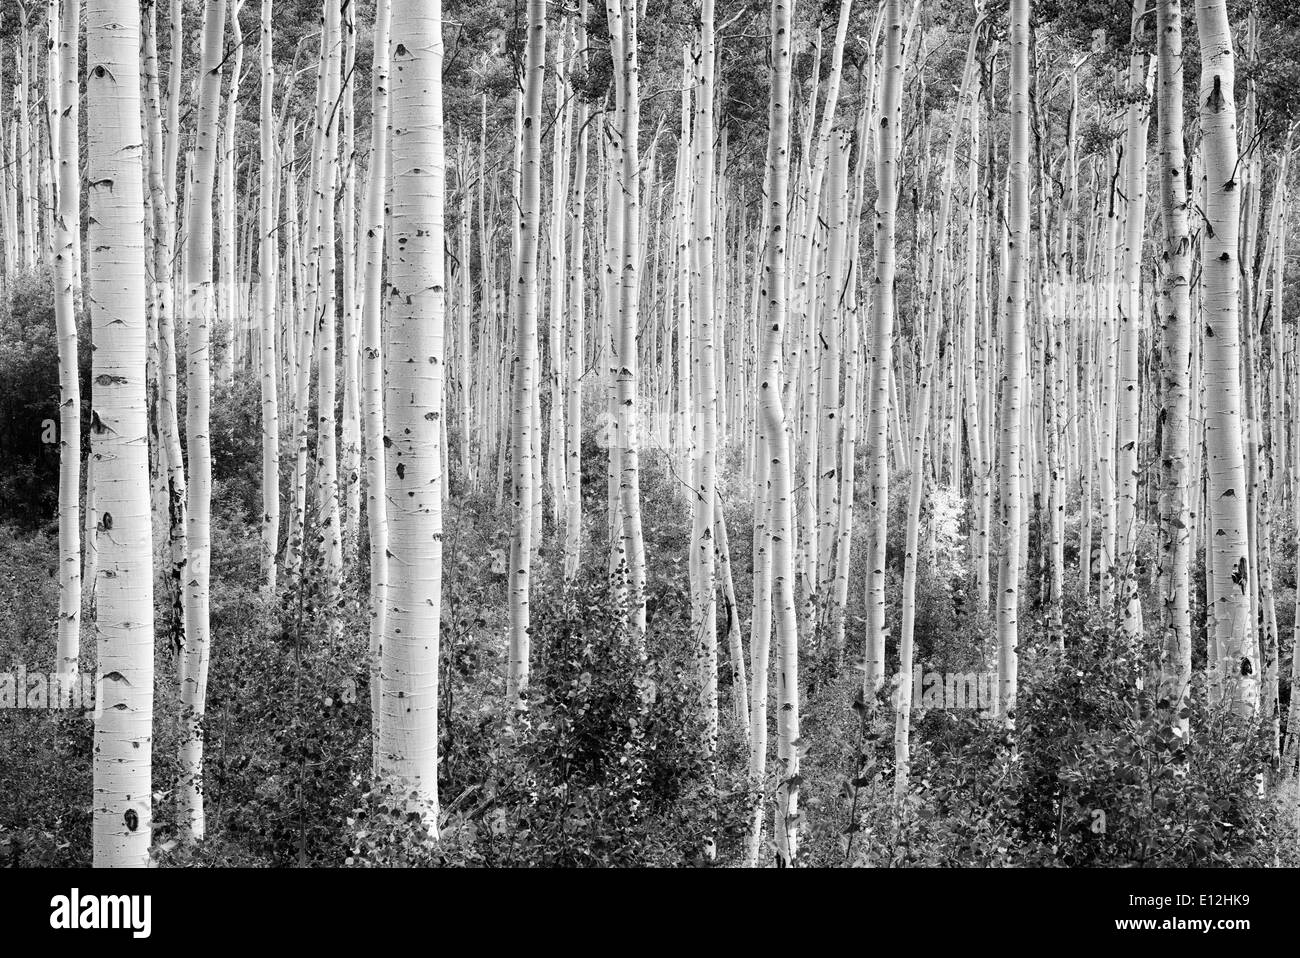 Tall tout droit tremble avec un petit arbre dans la couleur de l'automne. Près de Aspen, Colorado Banque D'Images